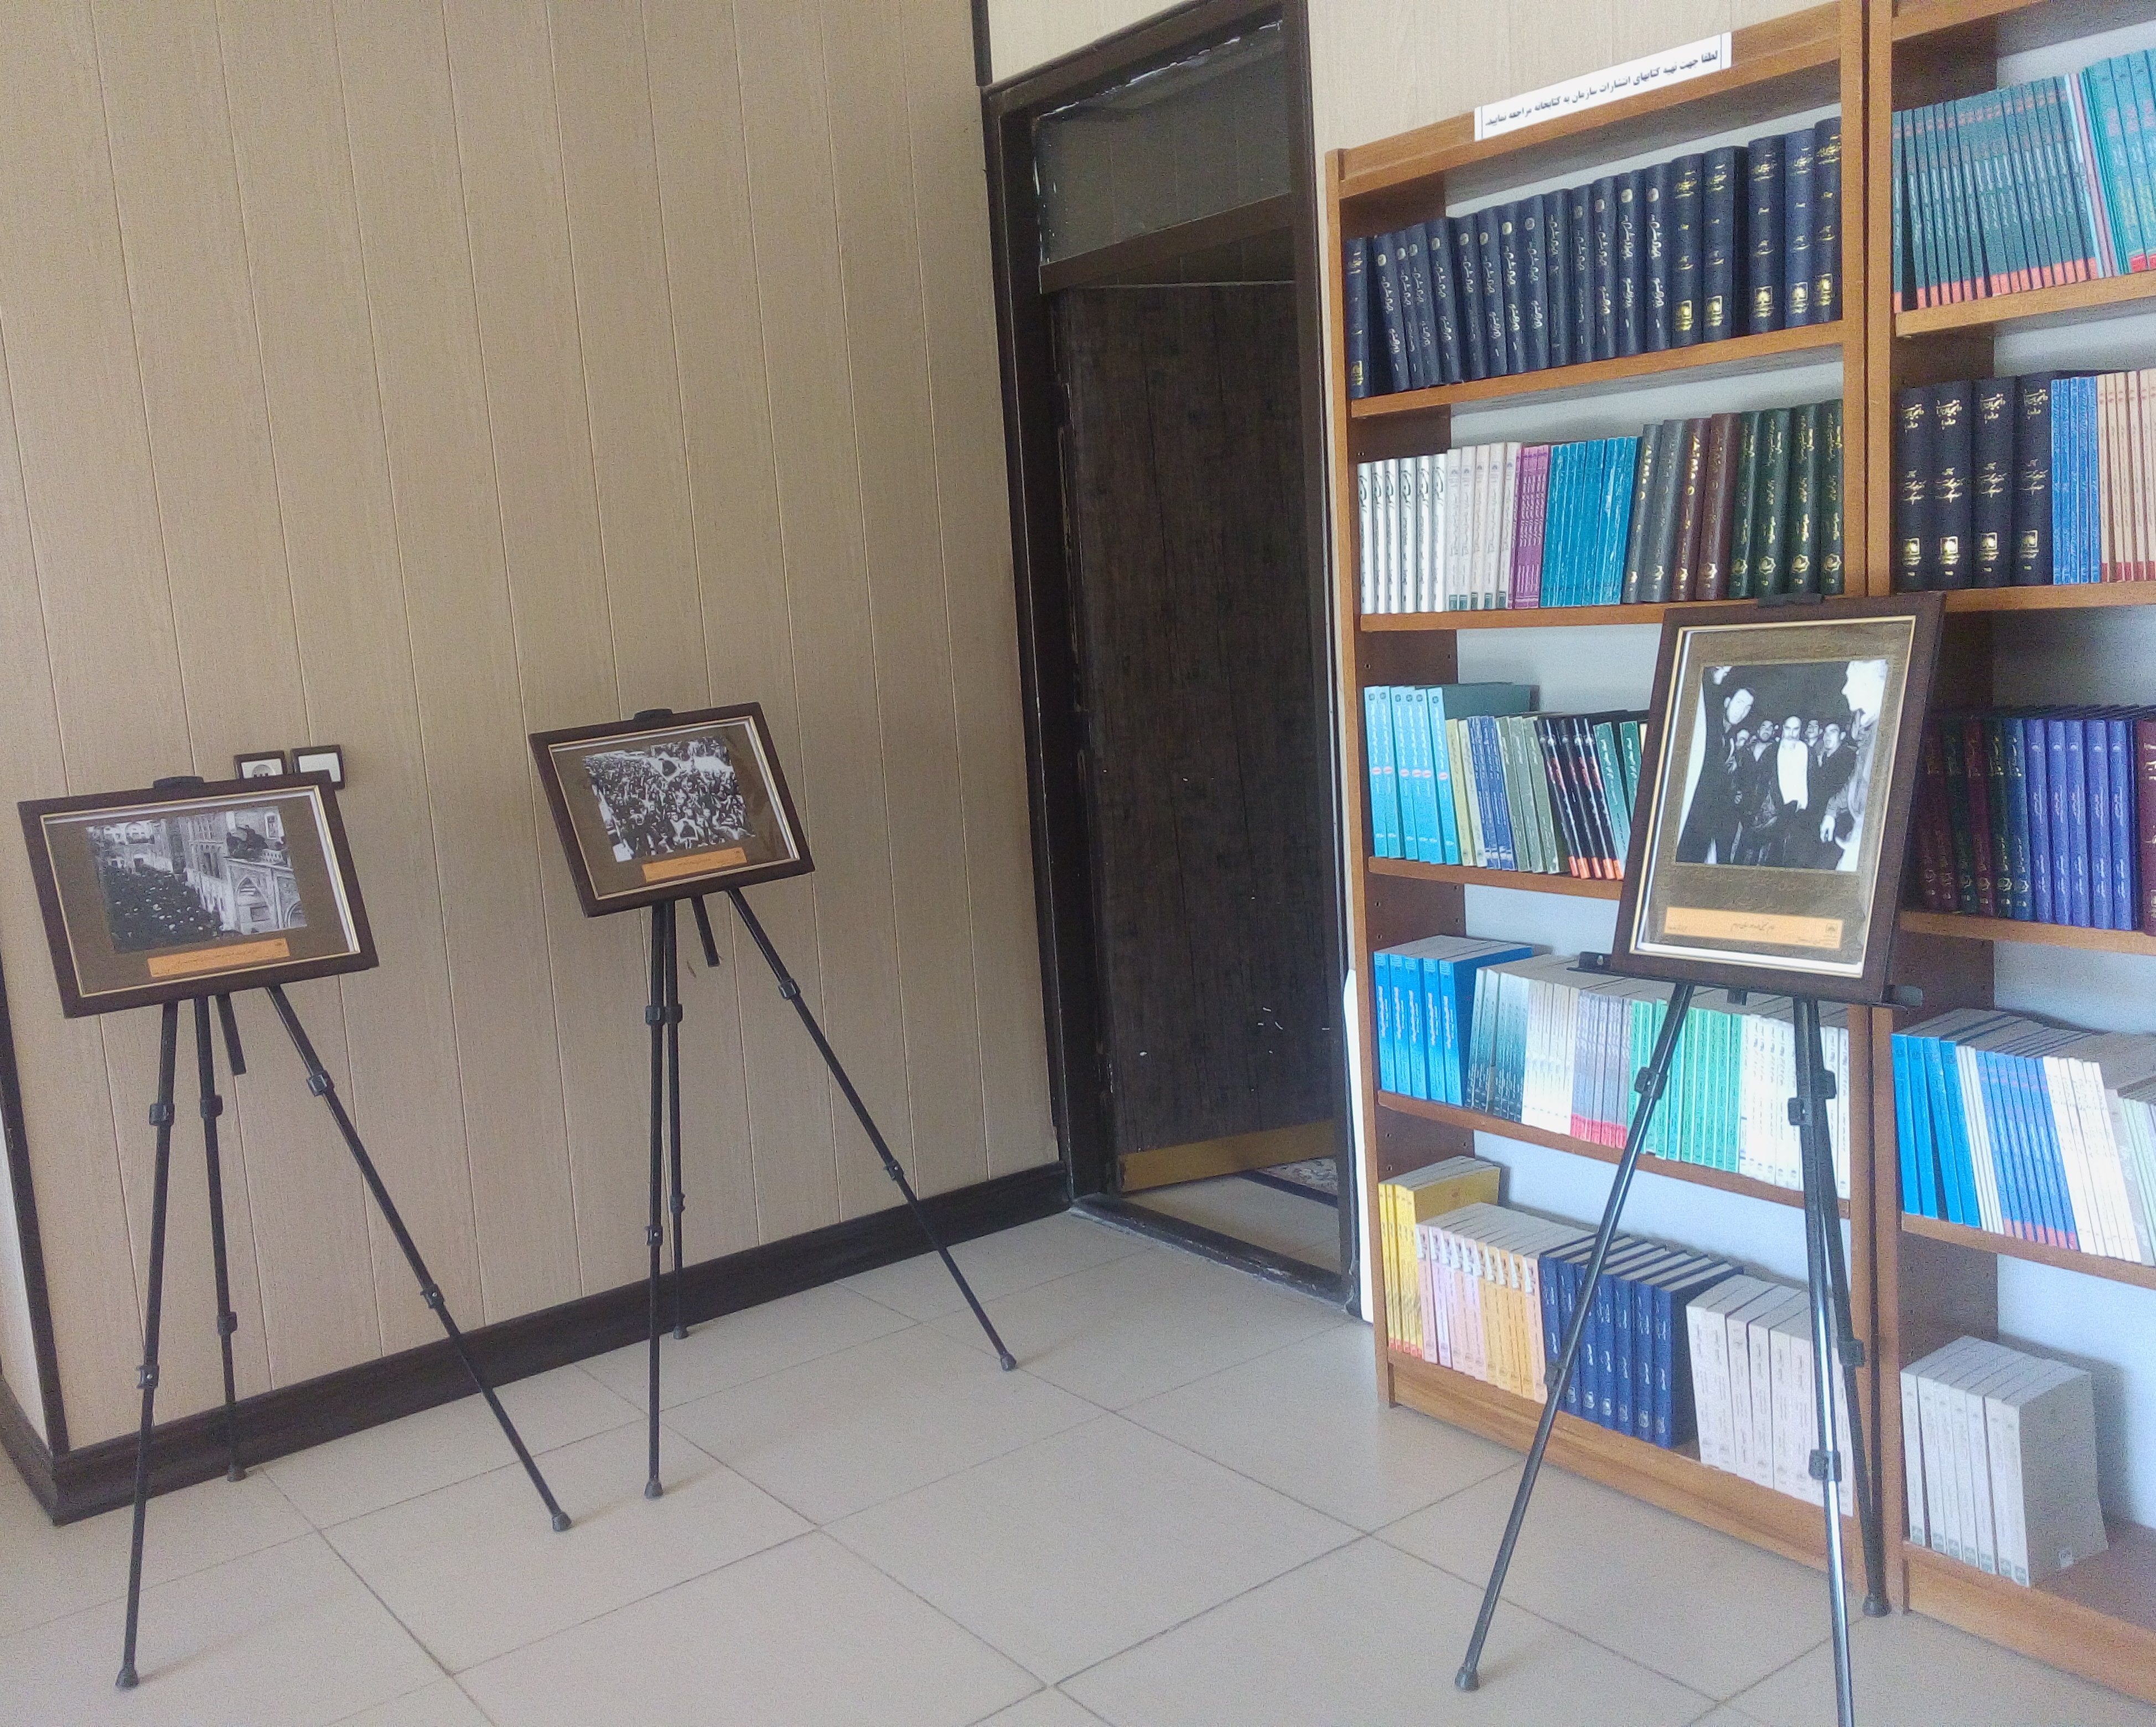 برگزاری نمایشگاه گزیده اسناد قیام 15 خرداد توسط سازمان اسناد و کتابخانه ملی استان یزد